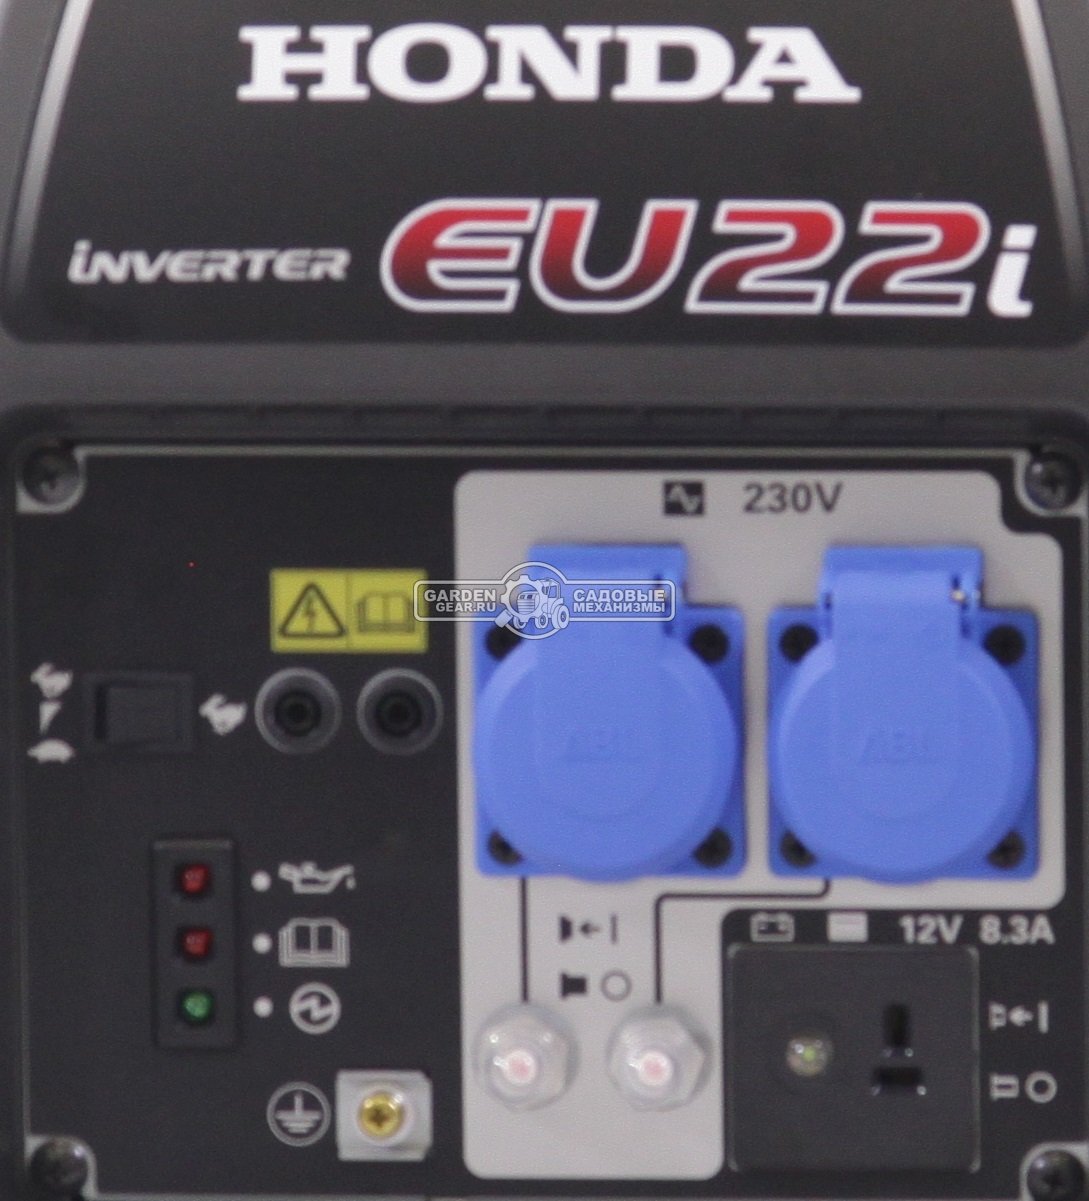 Бензиновый генератор инверторный Honda EU22iT1 RG (THA, Honda GXR120, 98.5 см3, 1.8/2.2 кВт, 3.6 л, 20.7 кг)